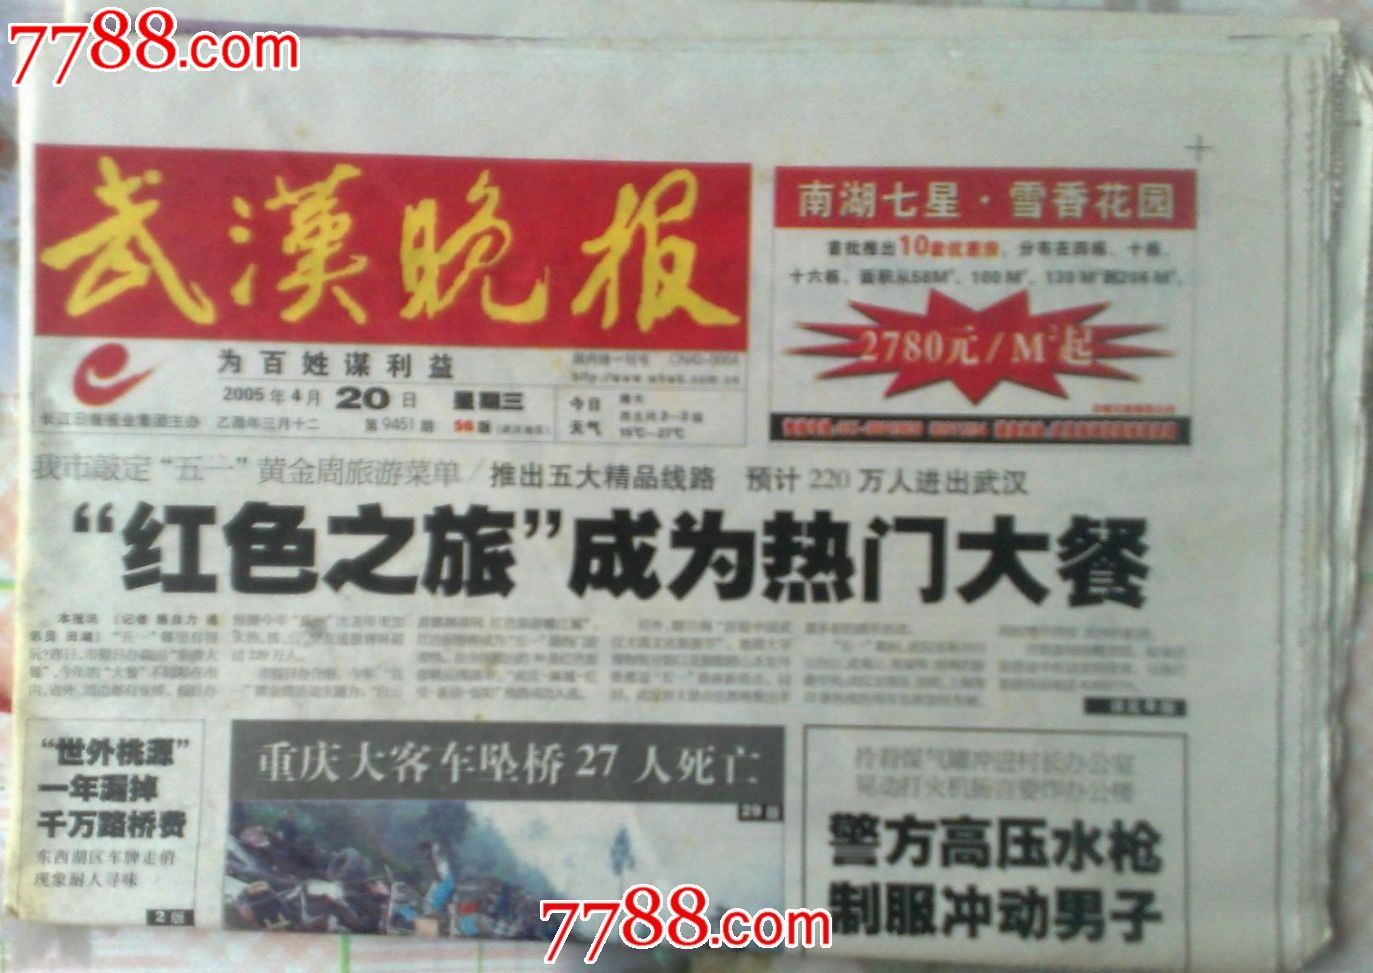 武汉晚报2005年4月20日红色之旅成为热门大餐-价格:1.0000元-se19694562-报纸-零售-7788收藏__中国收藏热线